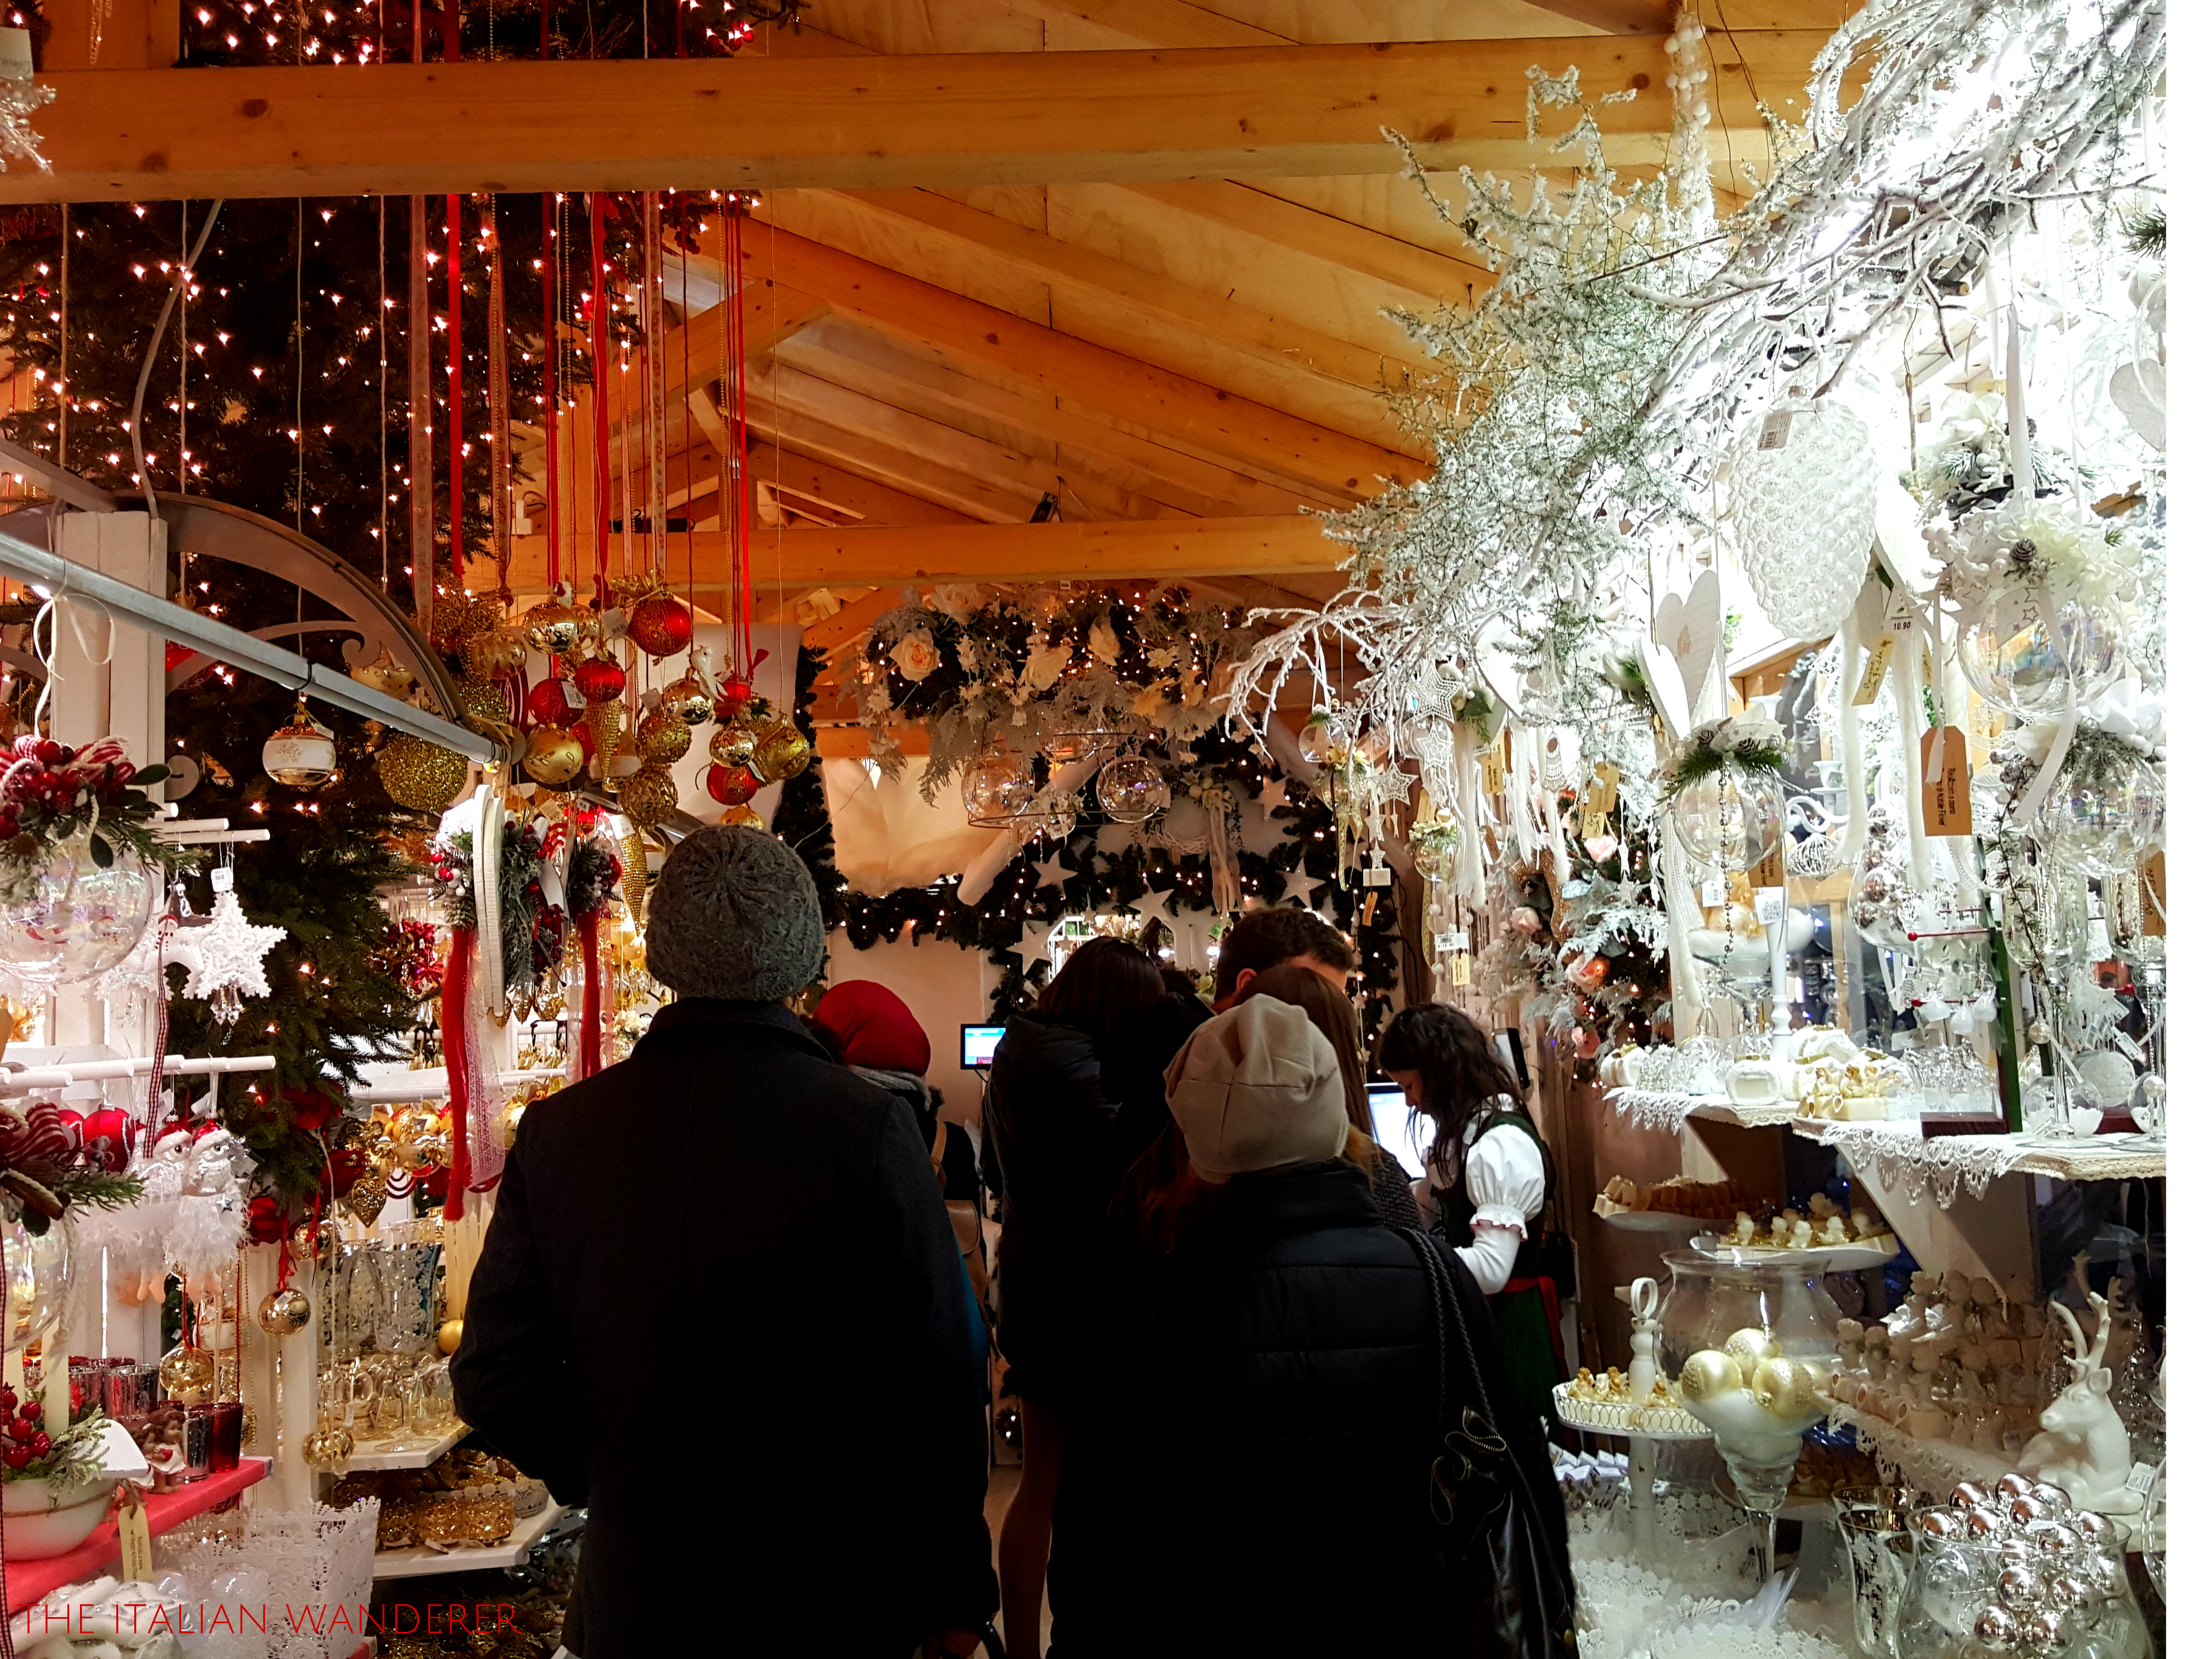 Verona Christmas Markets | The Italian Wanderer